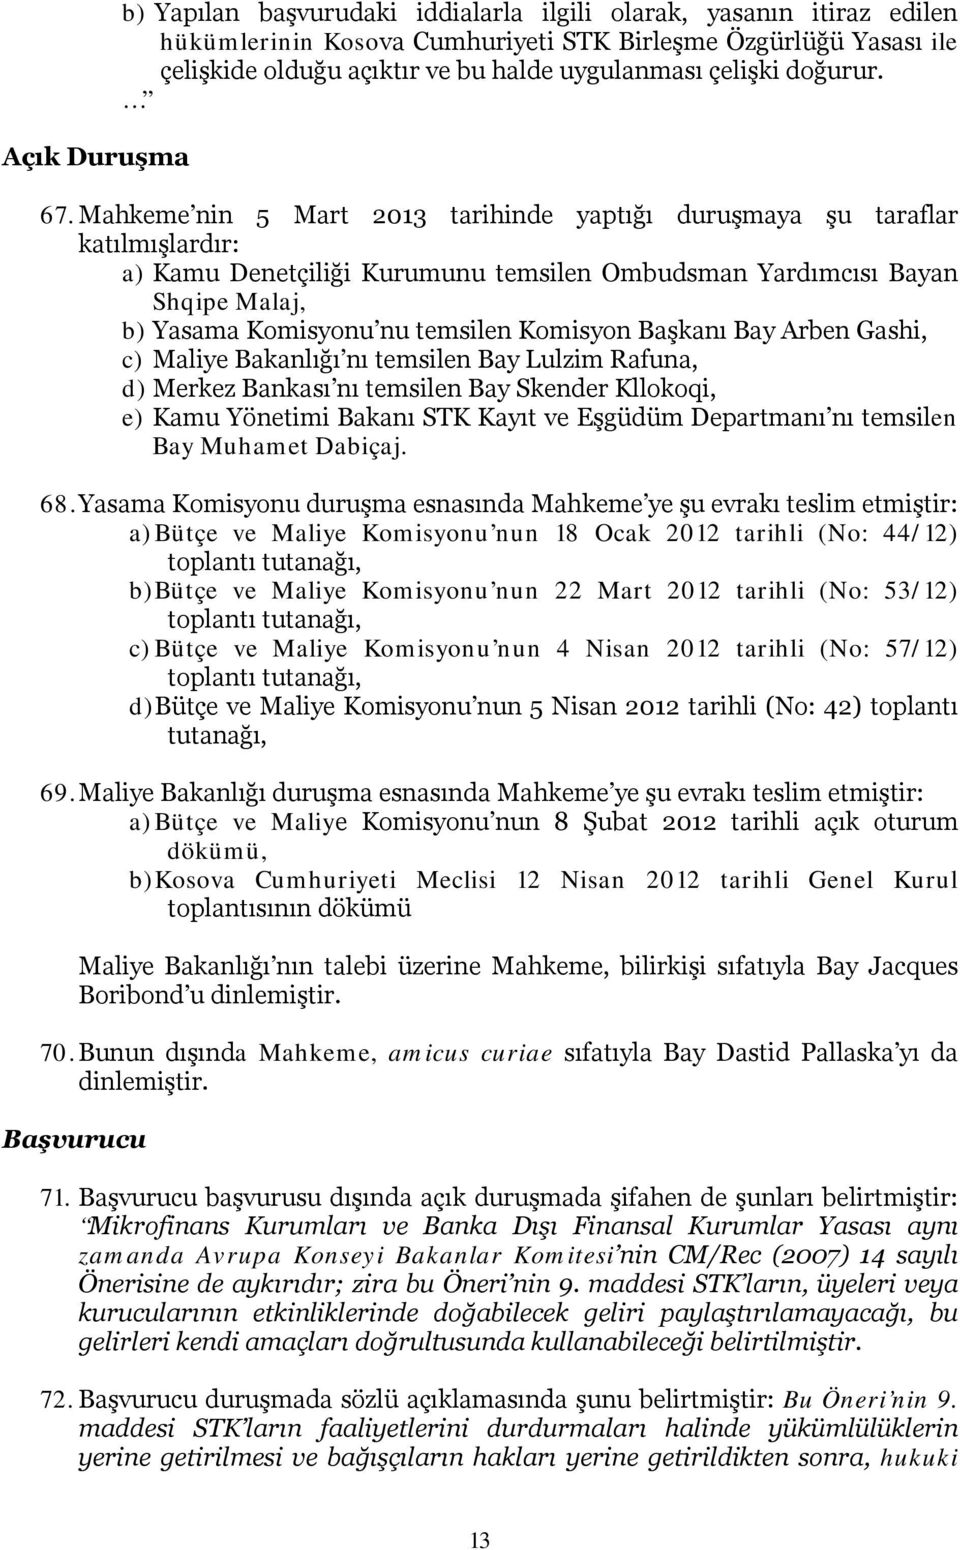 Mahkeme nin 5 Mart 2013 tarihinde yaptığı duruşmaya şu taraflar katılmışlardır: a) Kamu Denetçiliği Kurumunu temsilen Ombudsman Yardımcısı Bayan Shqipe Malaj, b) Yasama Komisyonu nu temsilen Komisyon